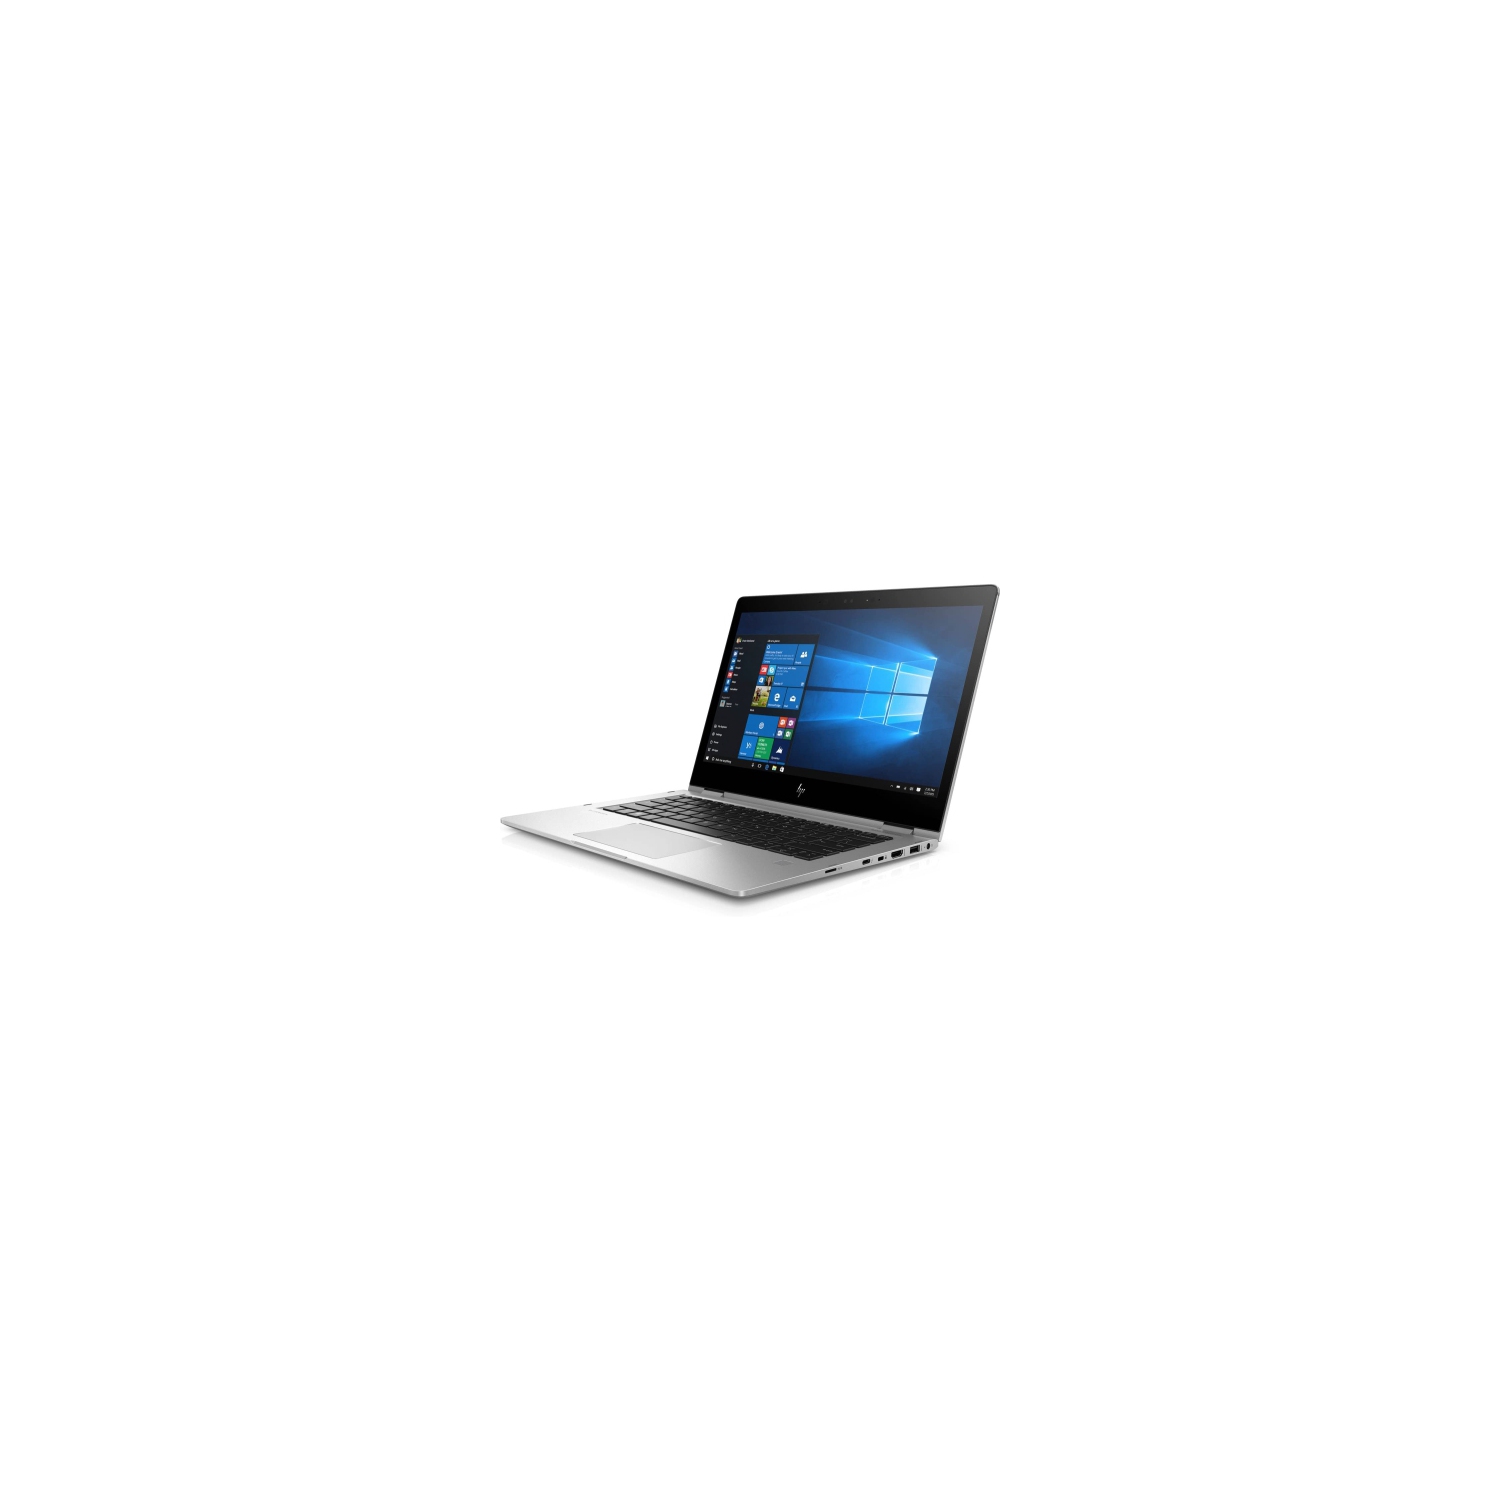 Refurbished (Good) - HP EliteBook x360 1030 G4 - 2 in 1 Laptop - Core i7-8665U CPU @ 1.90GHz - 16GB RAM - 512 NVMe(Grade A)